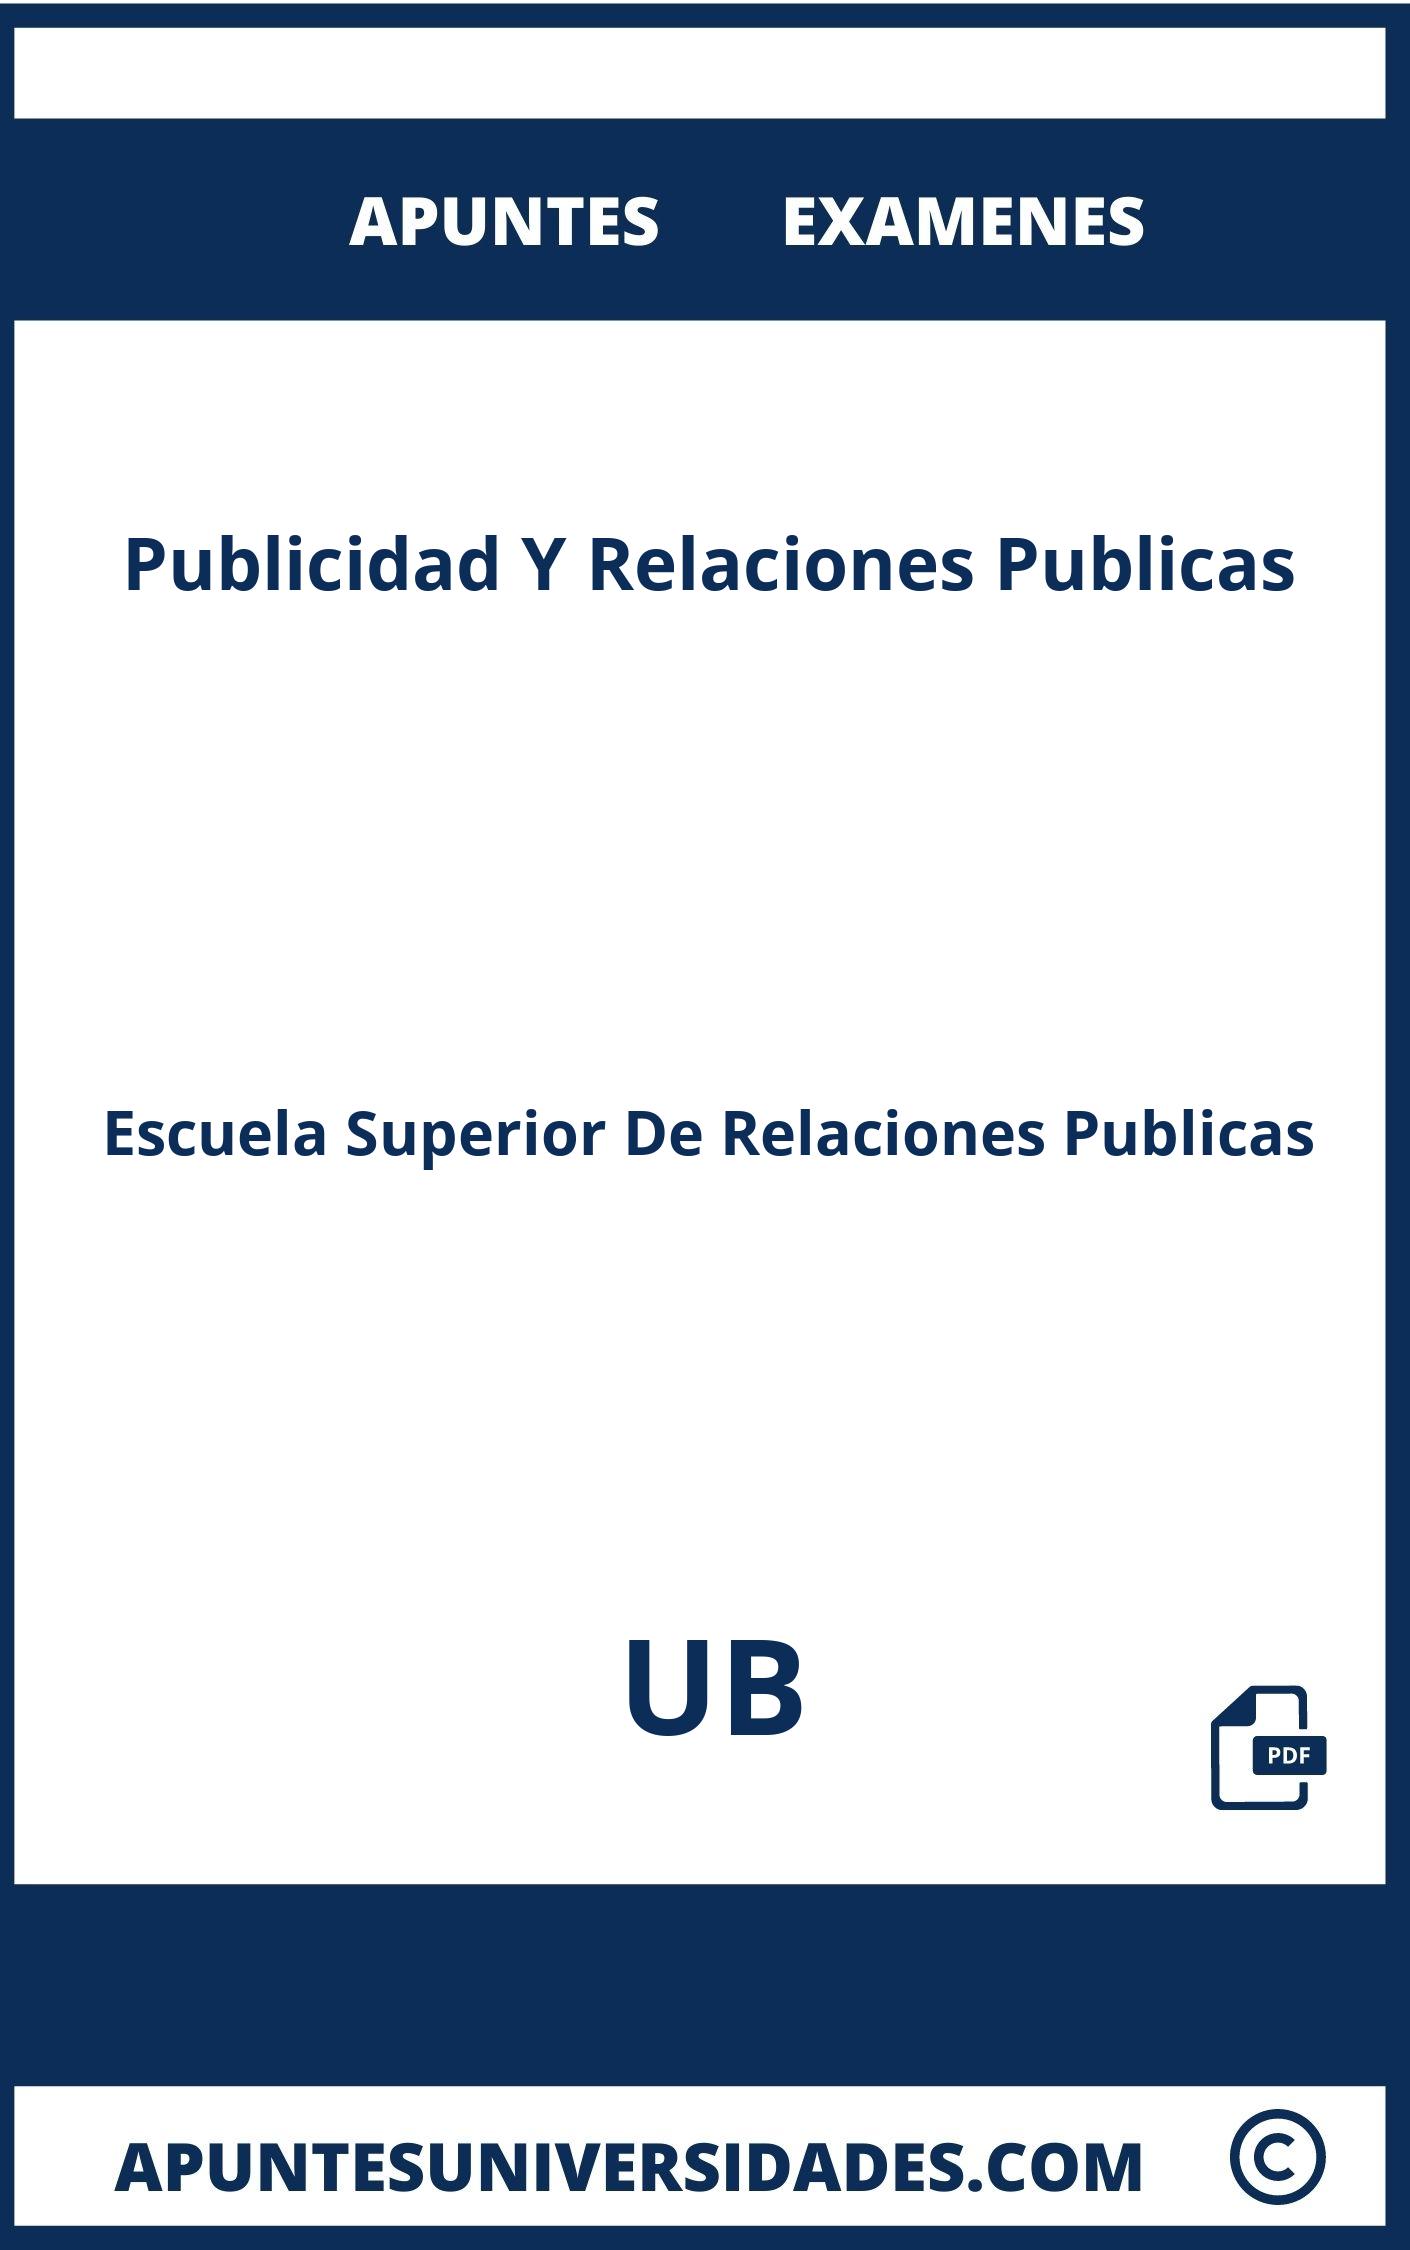 Publicidad Y Relaciones Publicas UB Examenes Apuntes